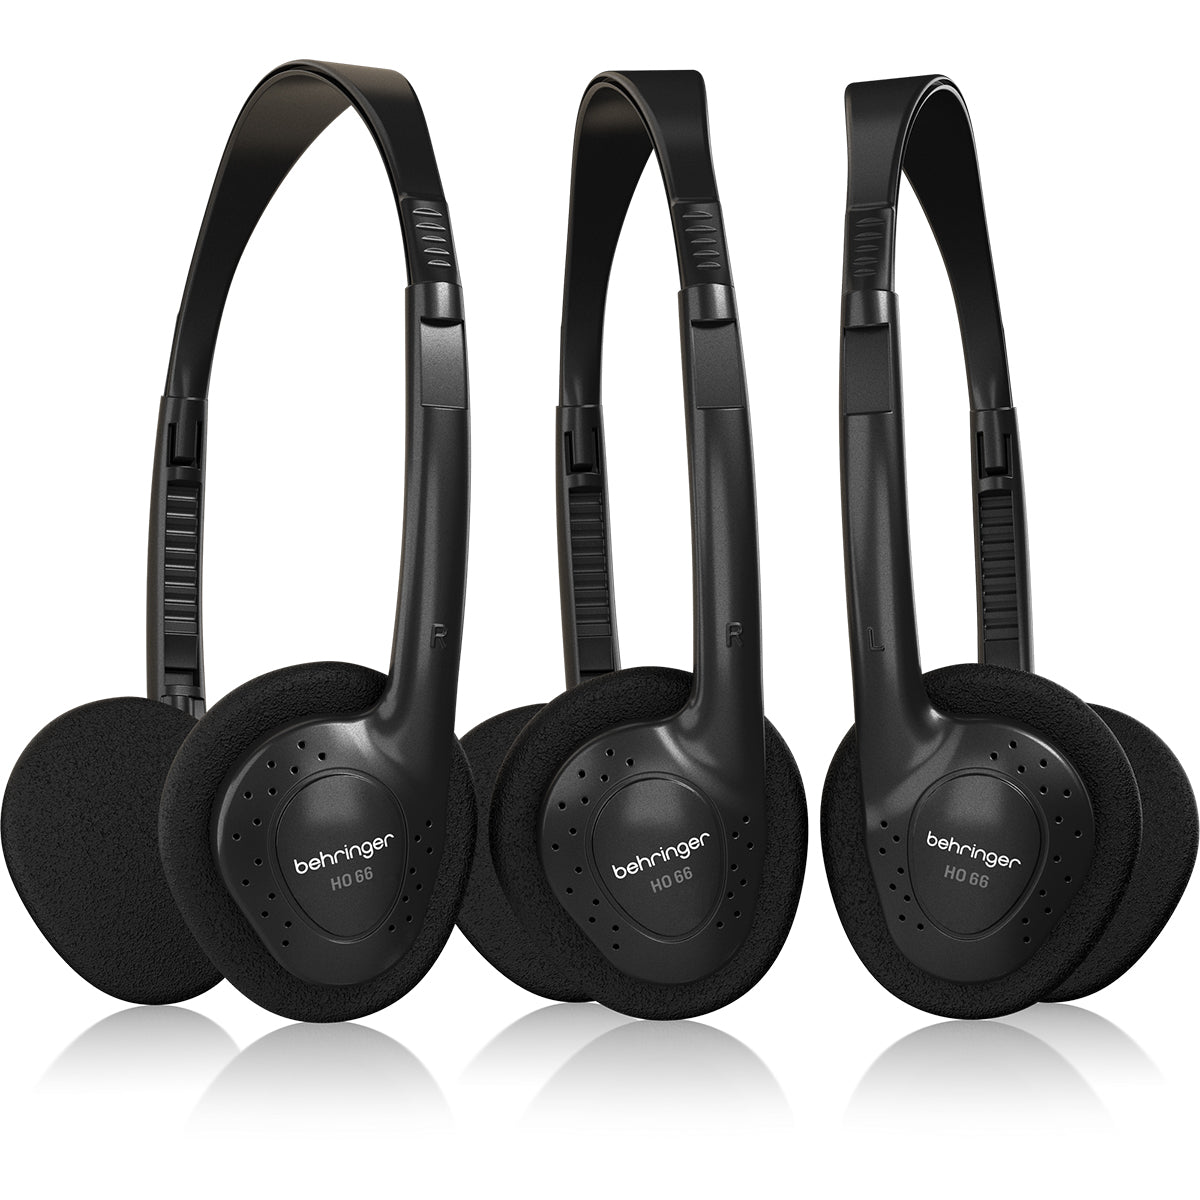 Behringer HO66 Stereo Headphones 3-Pack